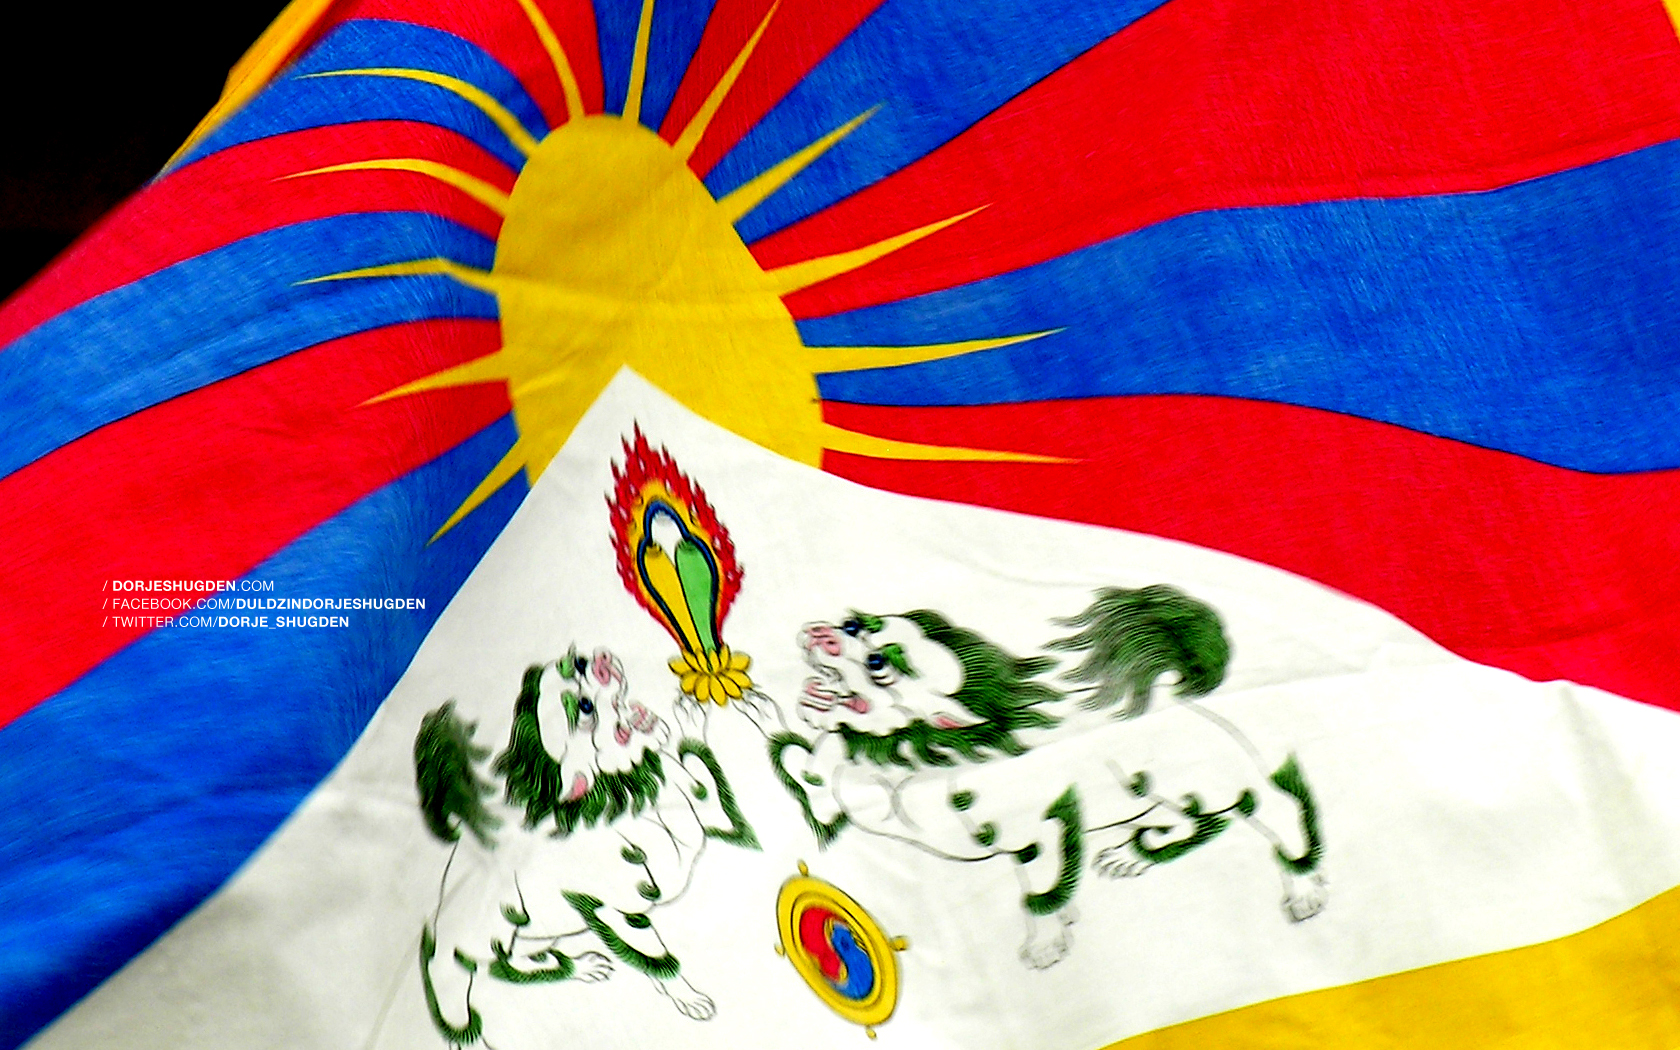 Wallpaper – Tibetan Flag | Dorje Shugden and Dalai Lama ...